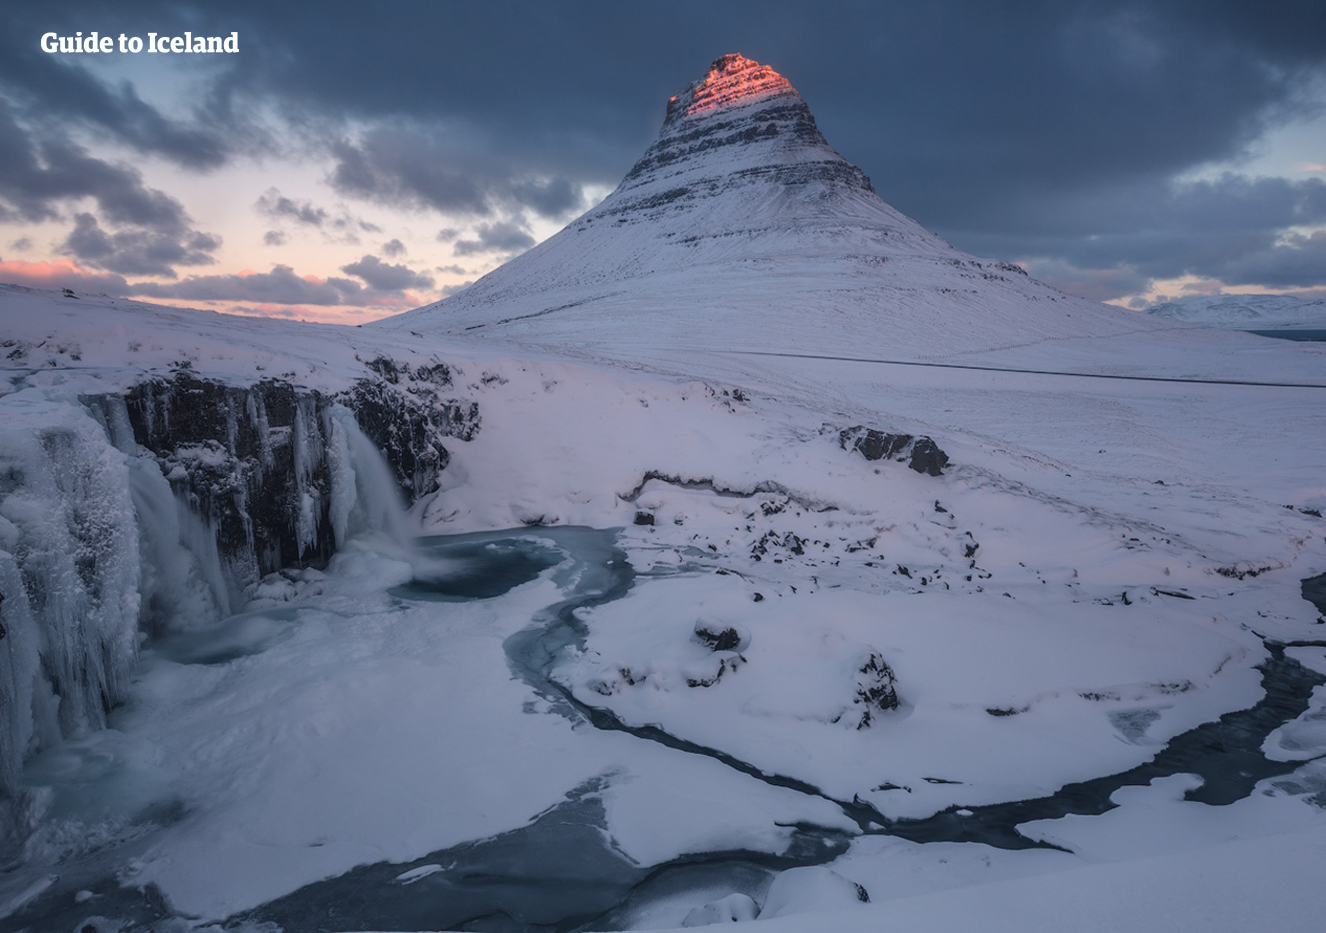 Półwysep Snæfellsnes na Islandii to miejsce, gdzie znajduje się góra Kirkjufell, sfotografowana tutaj zimą.